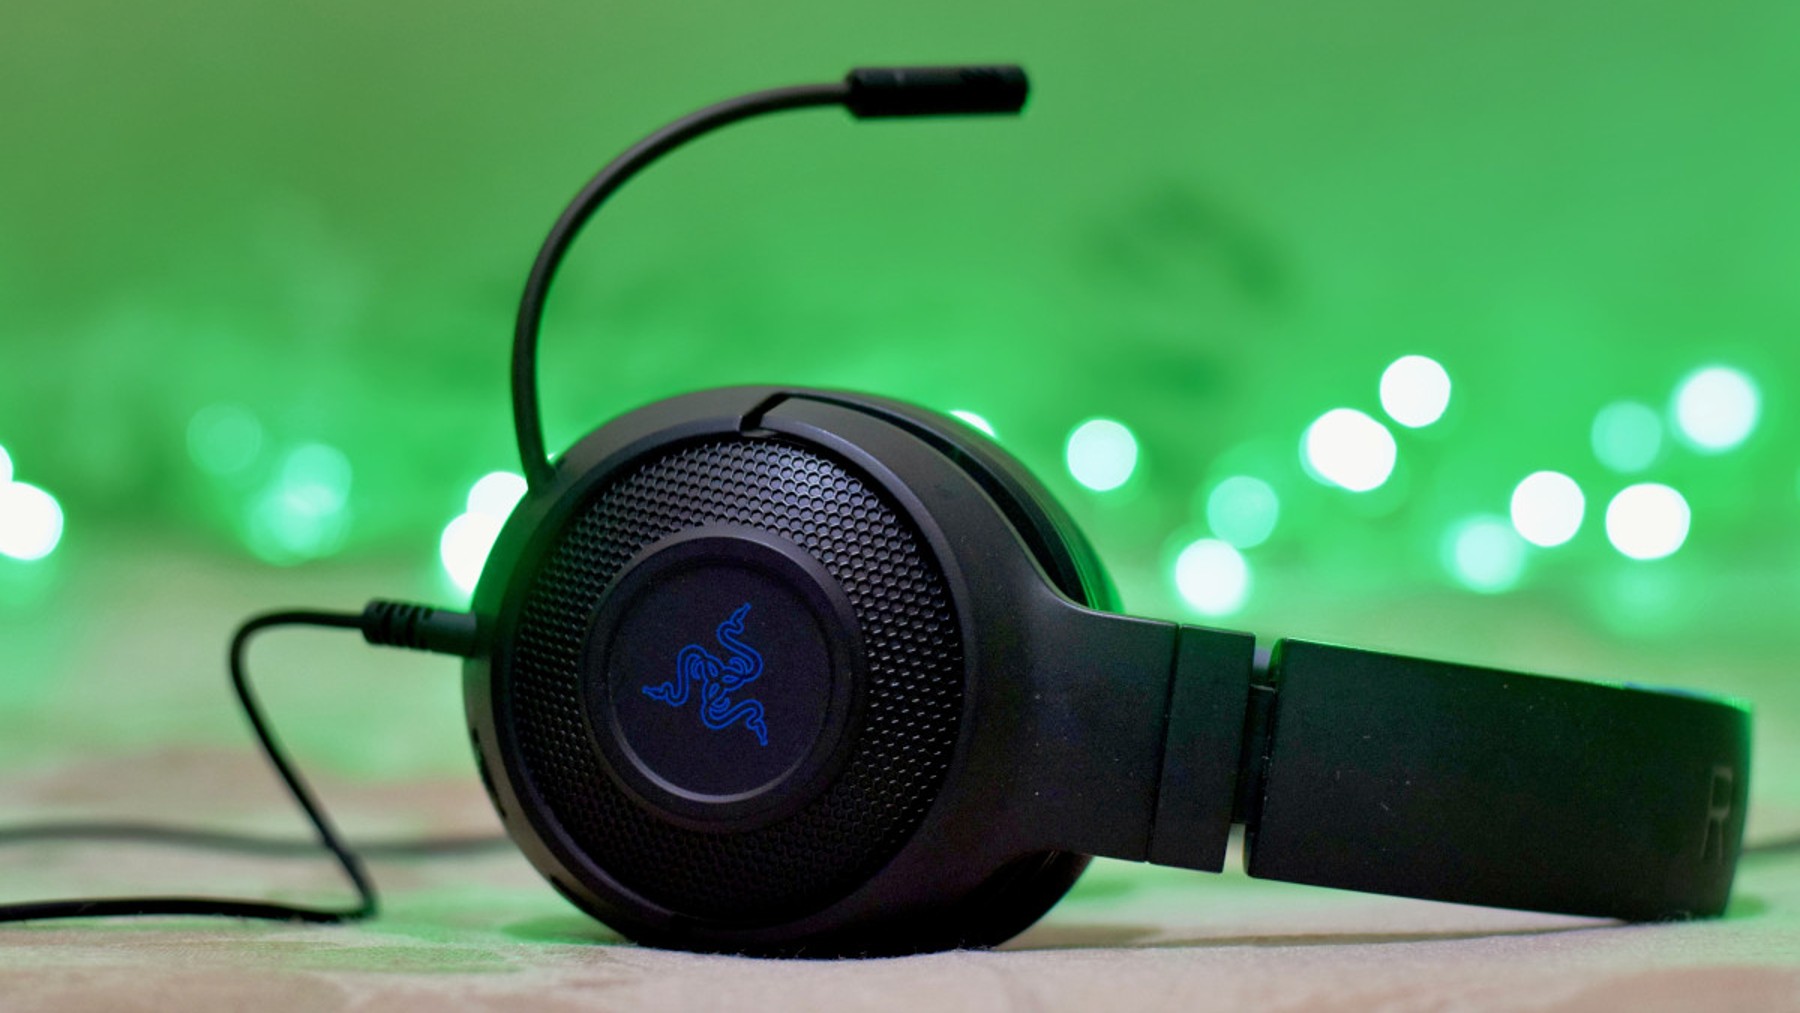 Chollazo en PcComponentes!: Estos auriculares inalámbricos gaming Razer  ahora rebajados un 24%